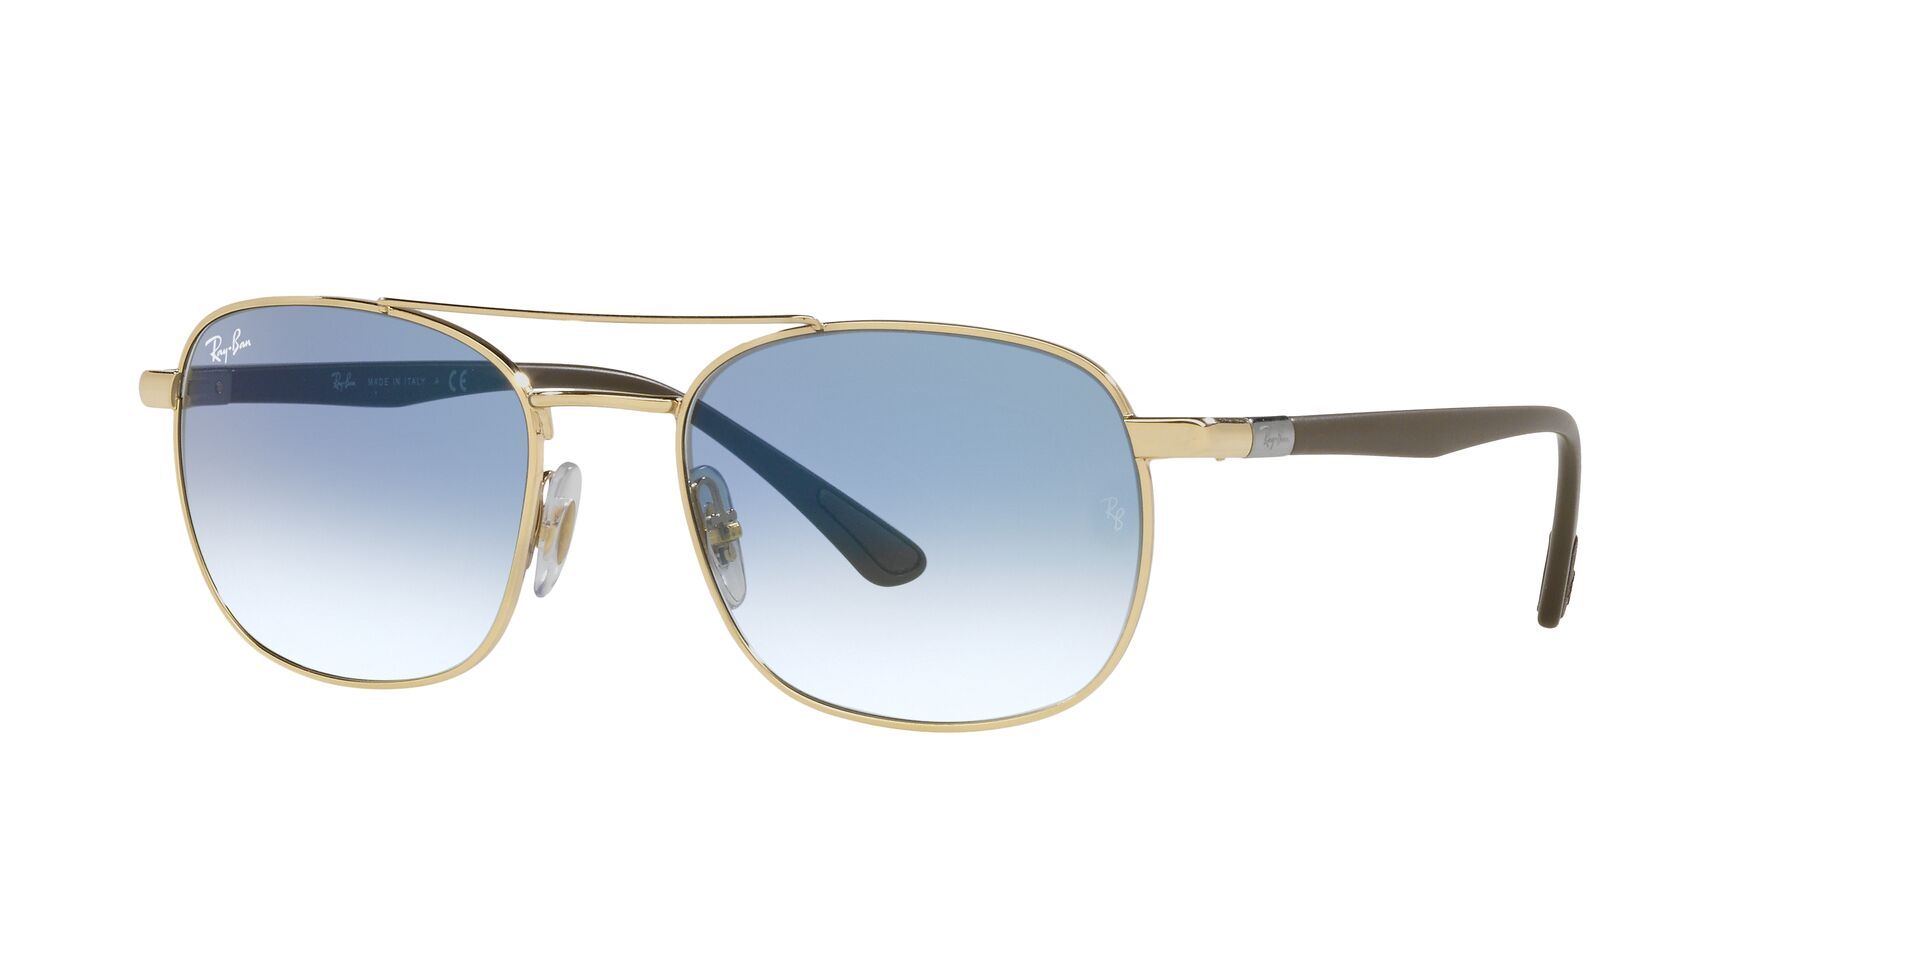 RB3670 Square Sunglasses | Fashion Eyewear US